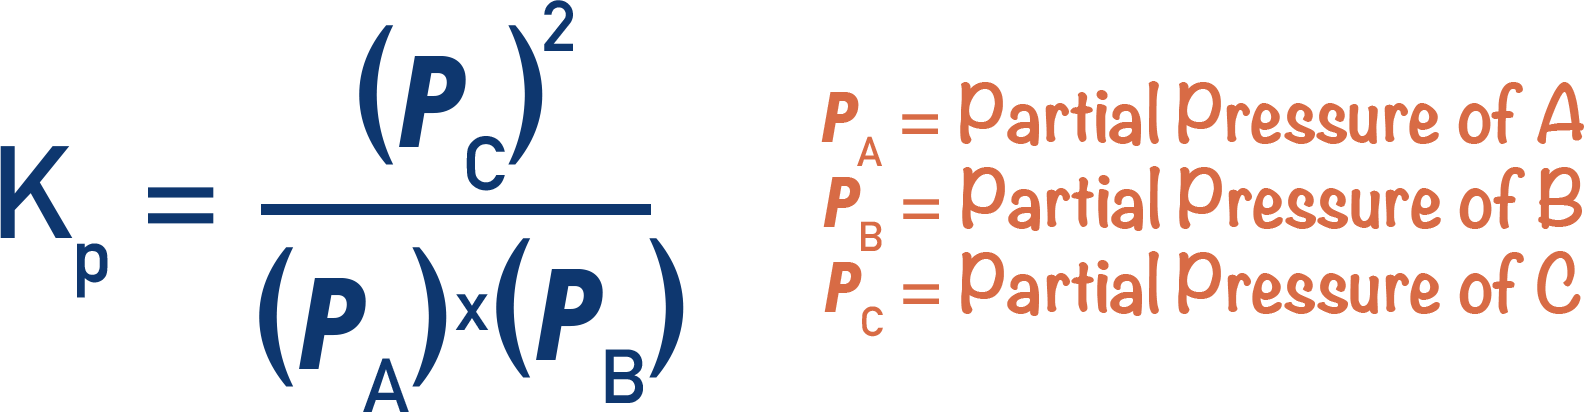 Kp expression partial presssures equilibrium constant